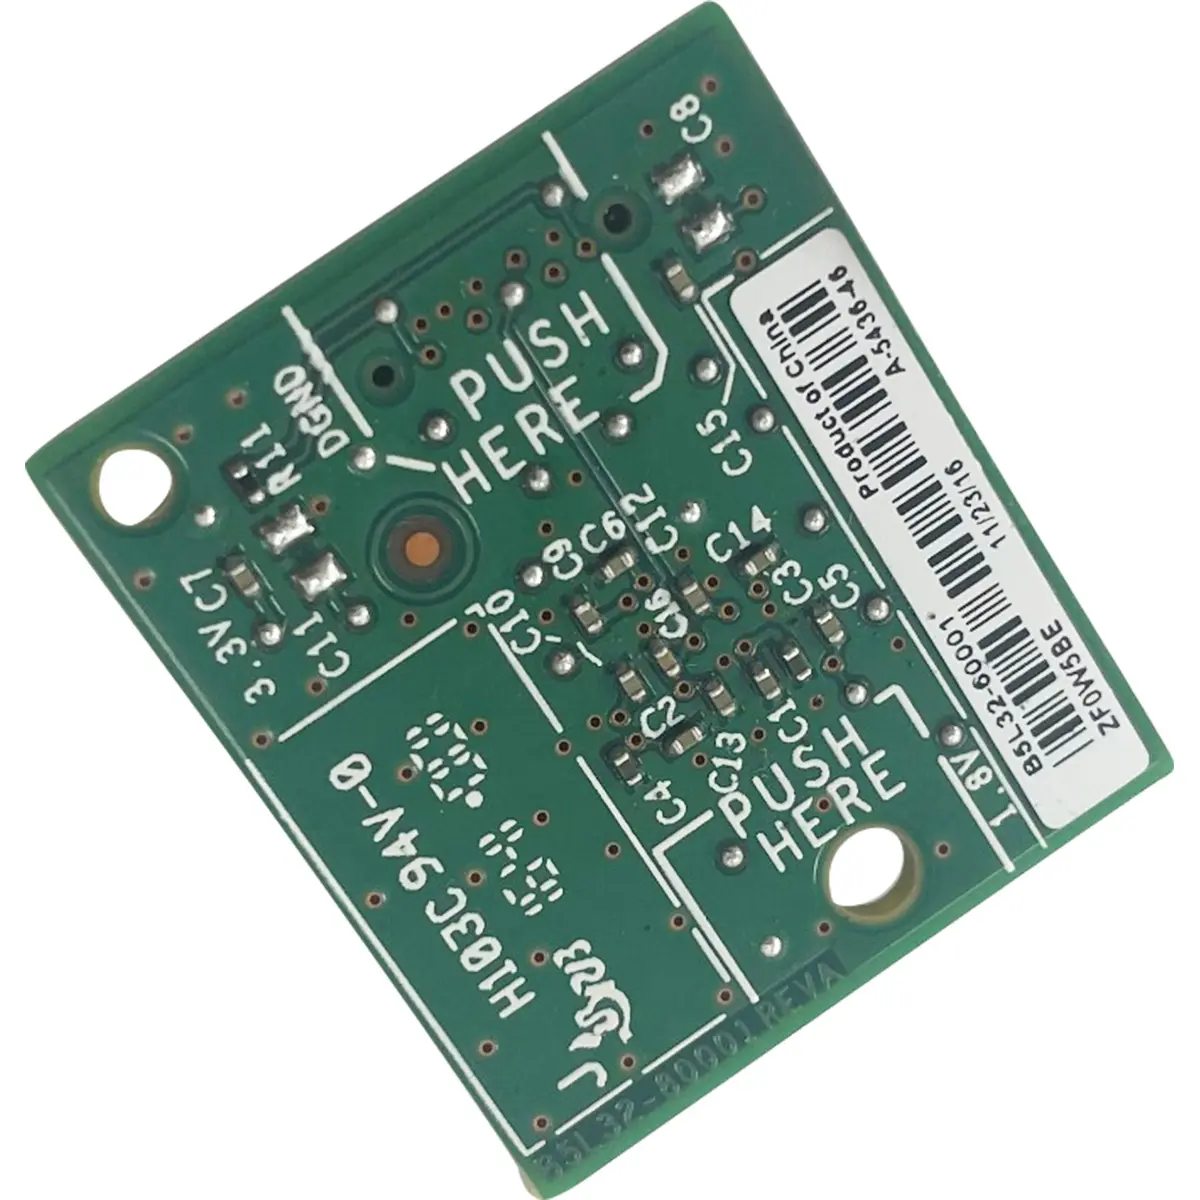 B5L32-60001 EMMC ASSY KIT Start Card for HP LJ Ent M552 M553 M604 M605 M606 M607 M608 Card Embedded Multi Media Card